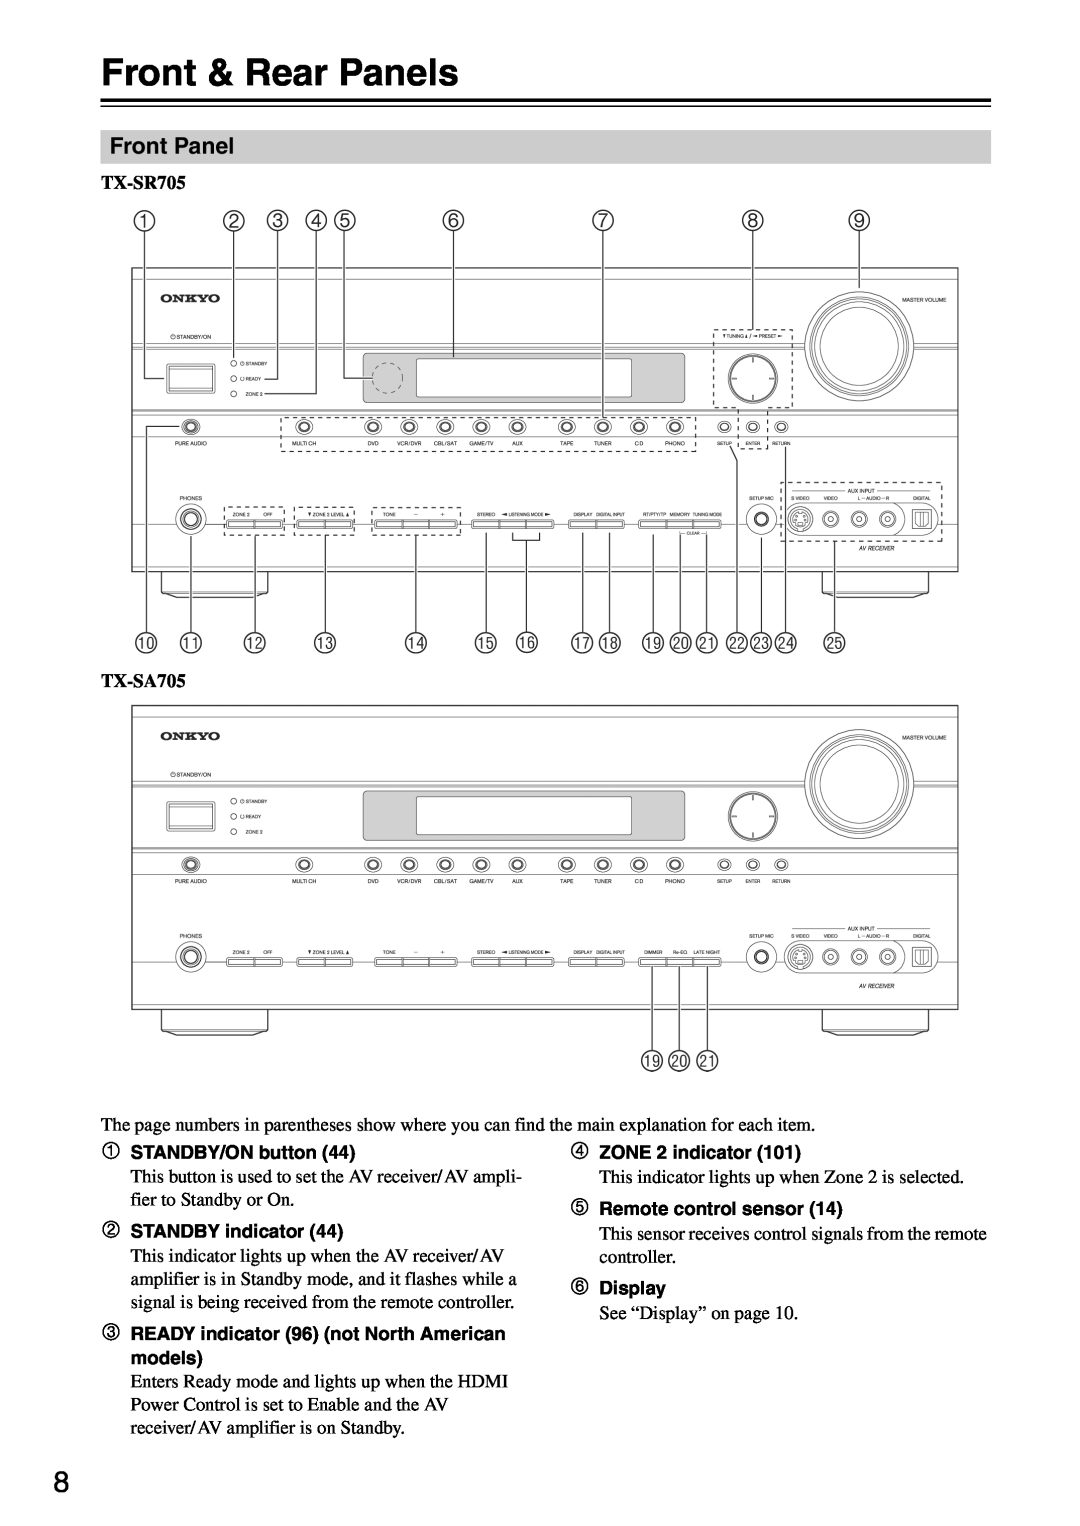 Onkyo TX-SA705 instruction manual Front & Rear Panels 